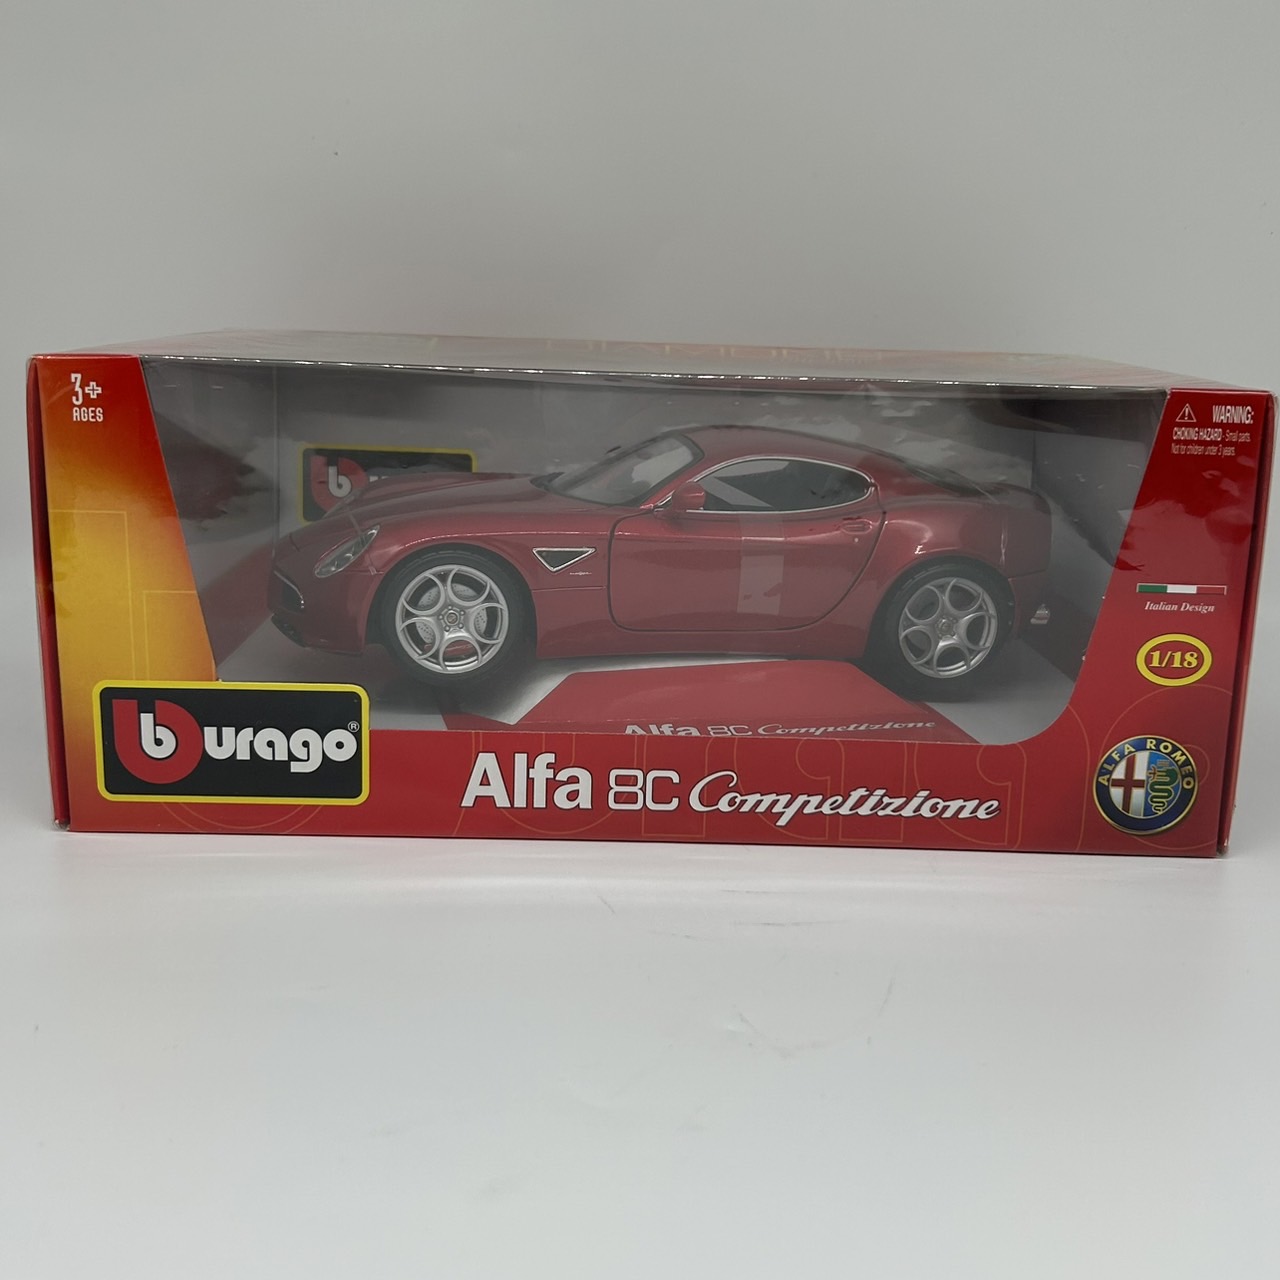 burago  diecast car 1/18 Alfaromeo 8C Competizione 2007 metallic red